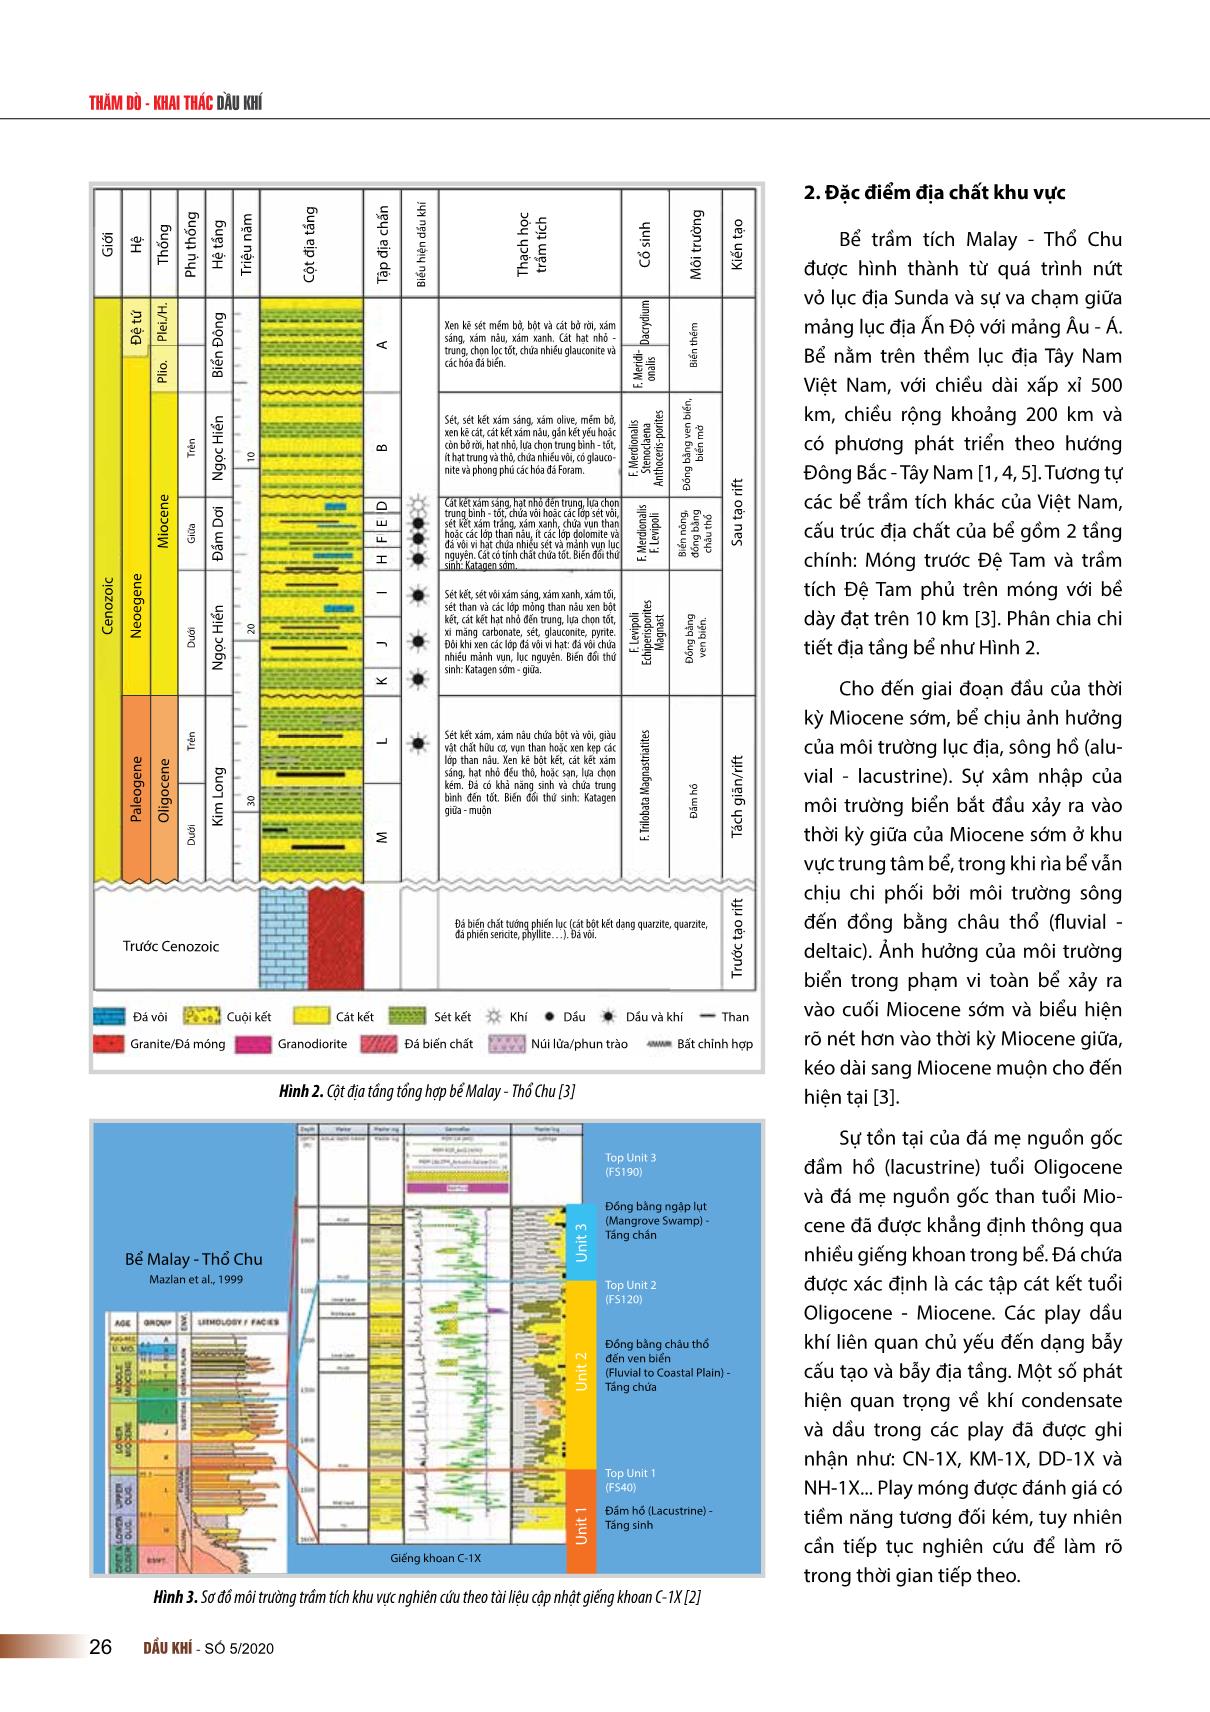 Đặc điểm hệ thống dầu khí khu vực rìa Tây Nam bể trầm tích Malay - Thổ chu, Việt Nam trang 2